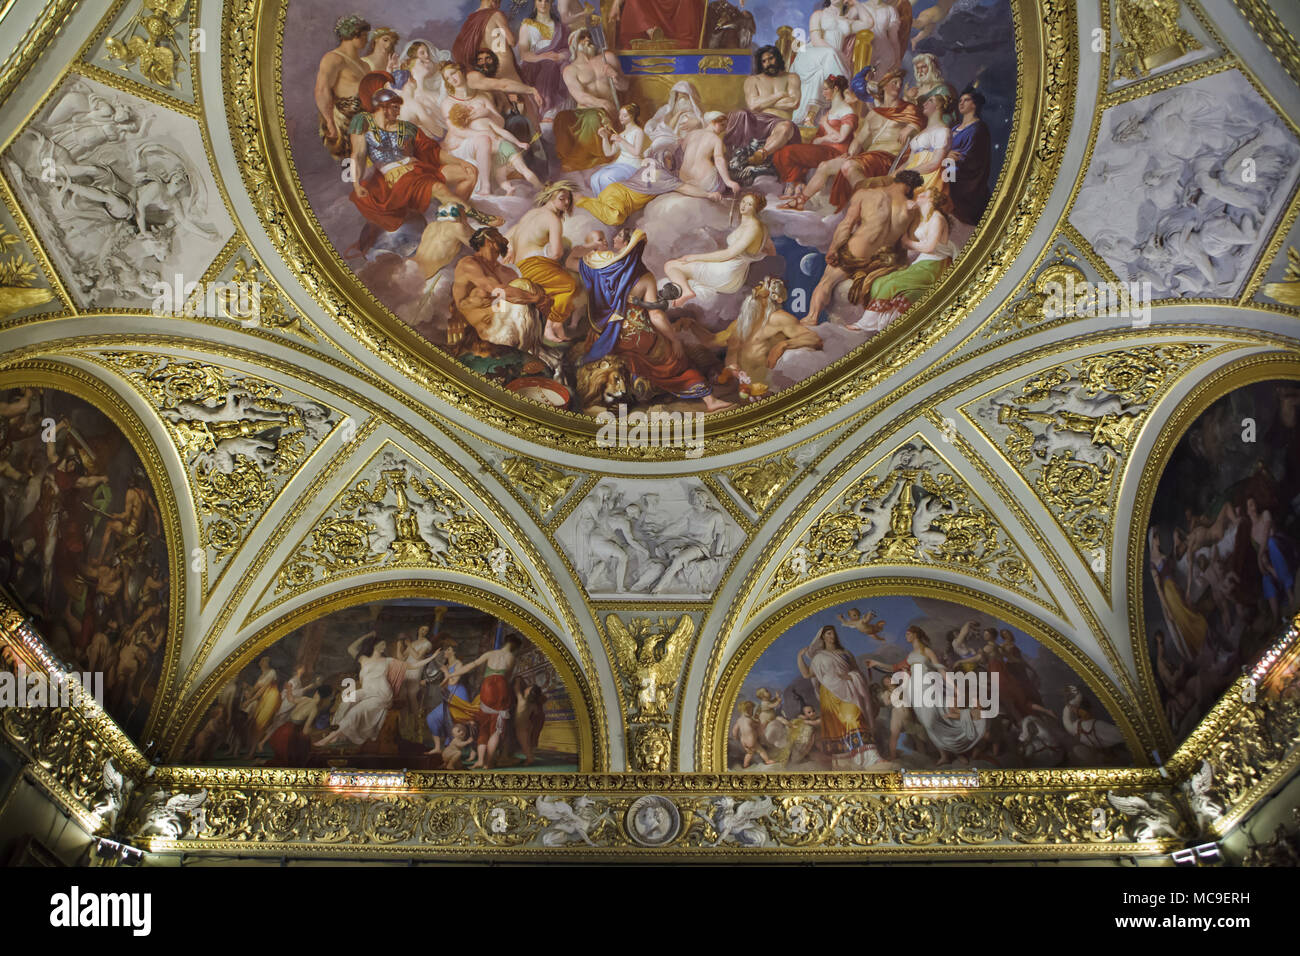 Plafond peinture par le peintre italien Luigi Sabatelli dans l'Iliade Prix dans la Galerie Palatine (Galleria Palatina) dans le Palais Pitti à Florence, Toscane, Italie. Banque D'Images